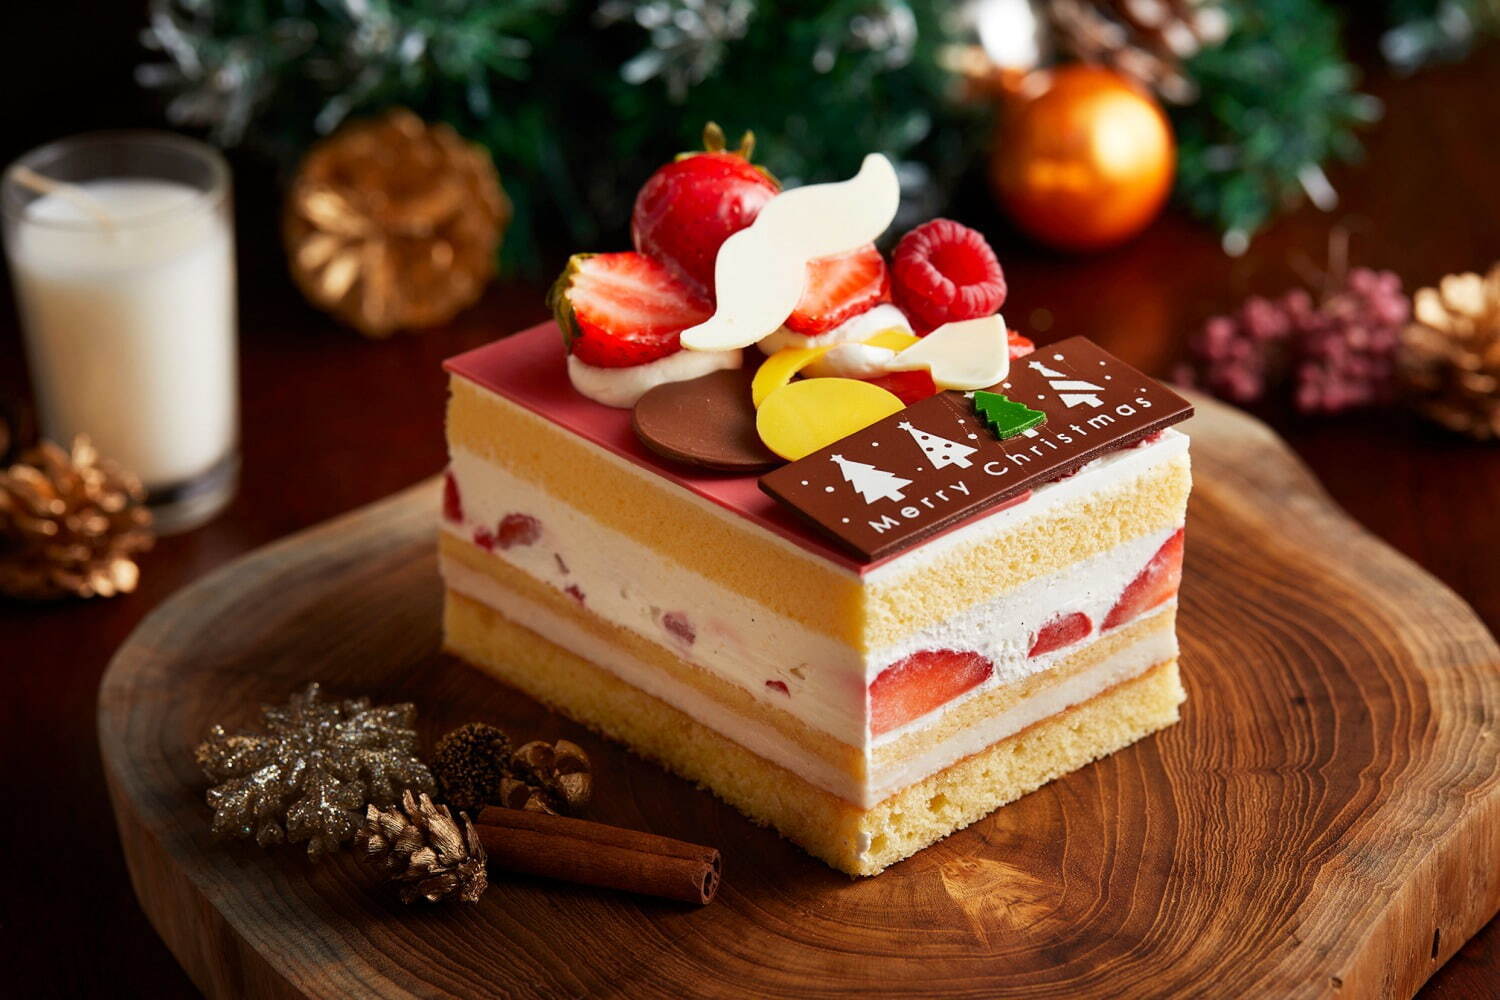 クリスマスケーキ特集22年 関西編 大阪 京都など高級ホテル 百貨店の 予約必至 人気ケーキ ファッションプレス